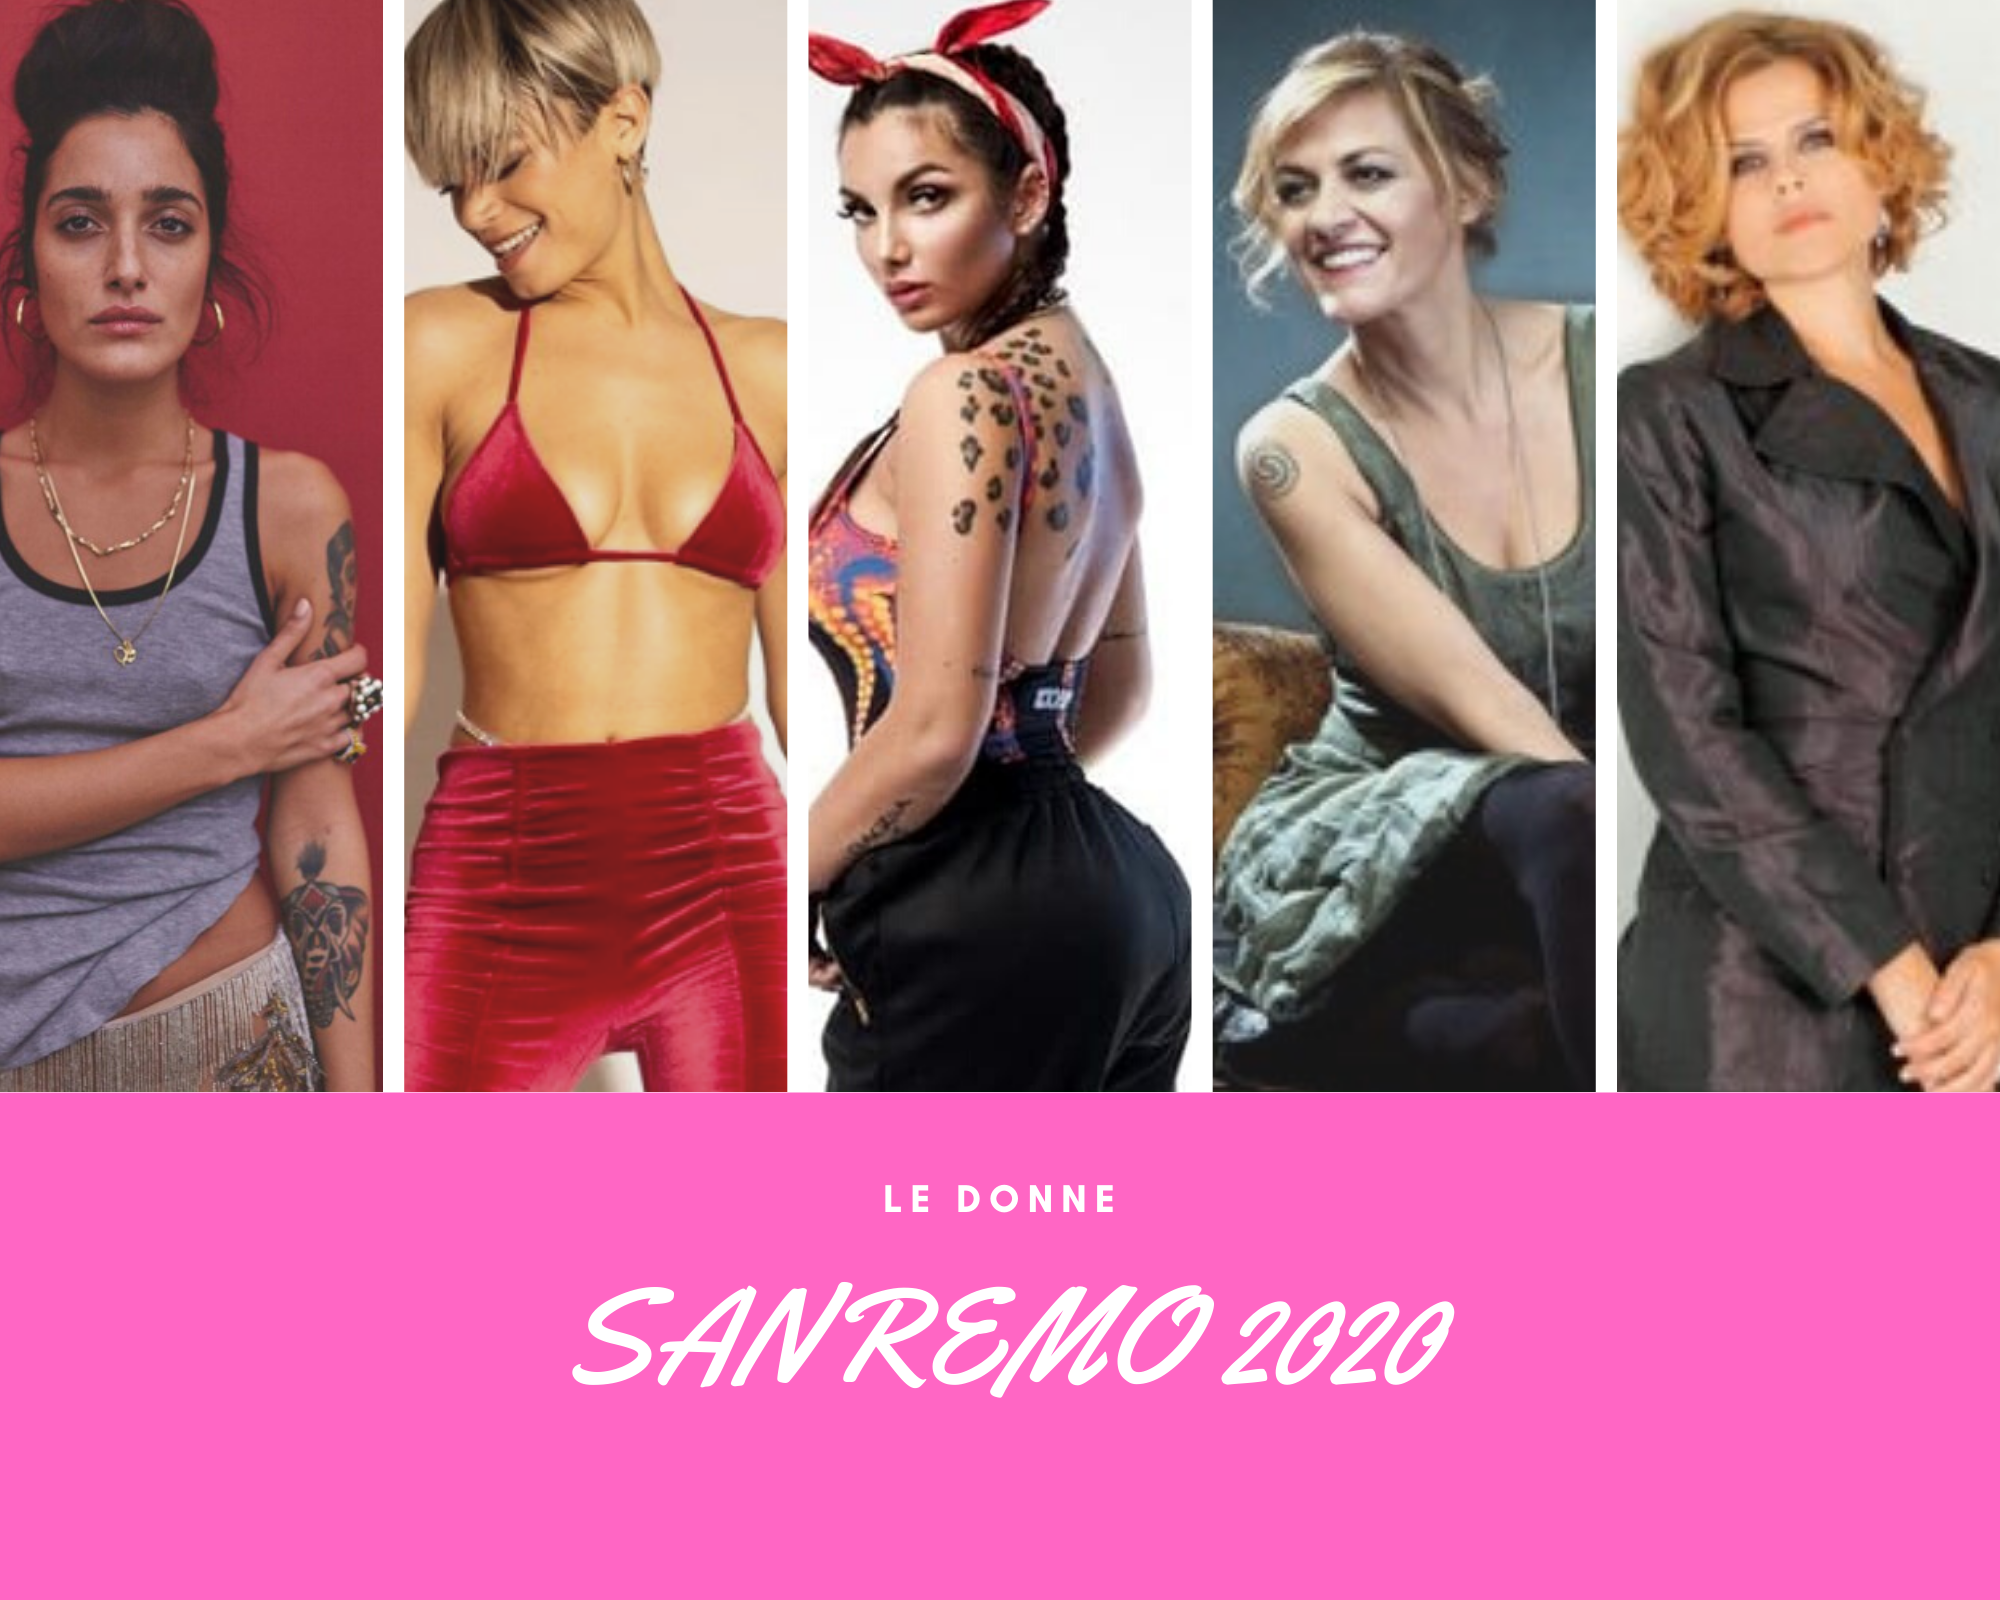 SANREMO 2020 - DONNE (Tosca, Levante, Elettra Lamborghini, Irene Grandi, Elodie, Rita Pavone, Giordana Angi...)